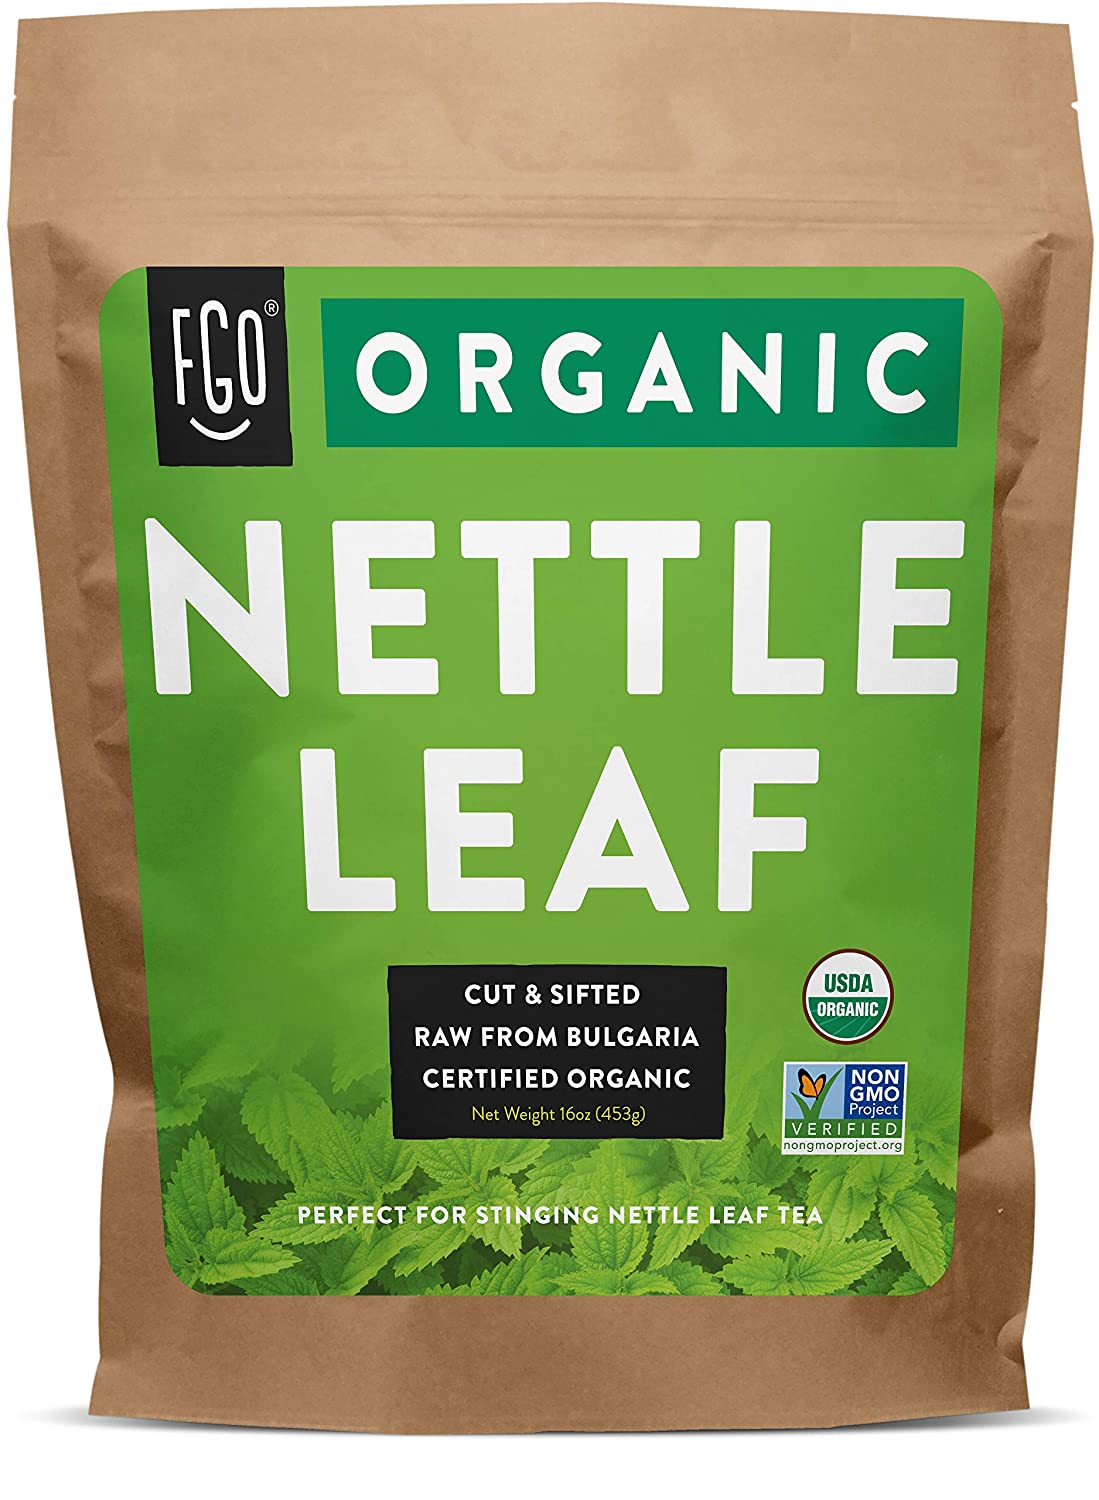 Nettle Leaf Amazon - KibrisPDR